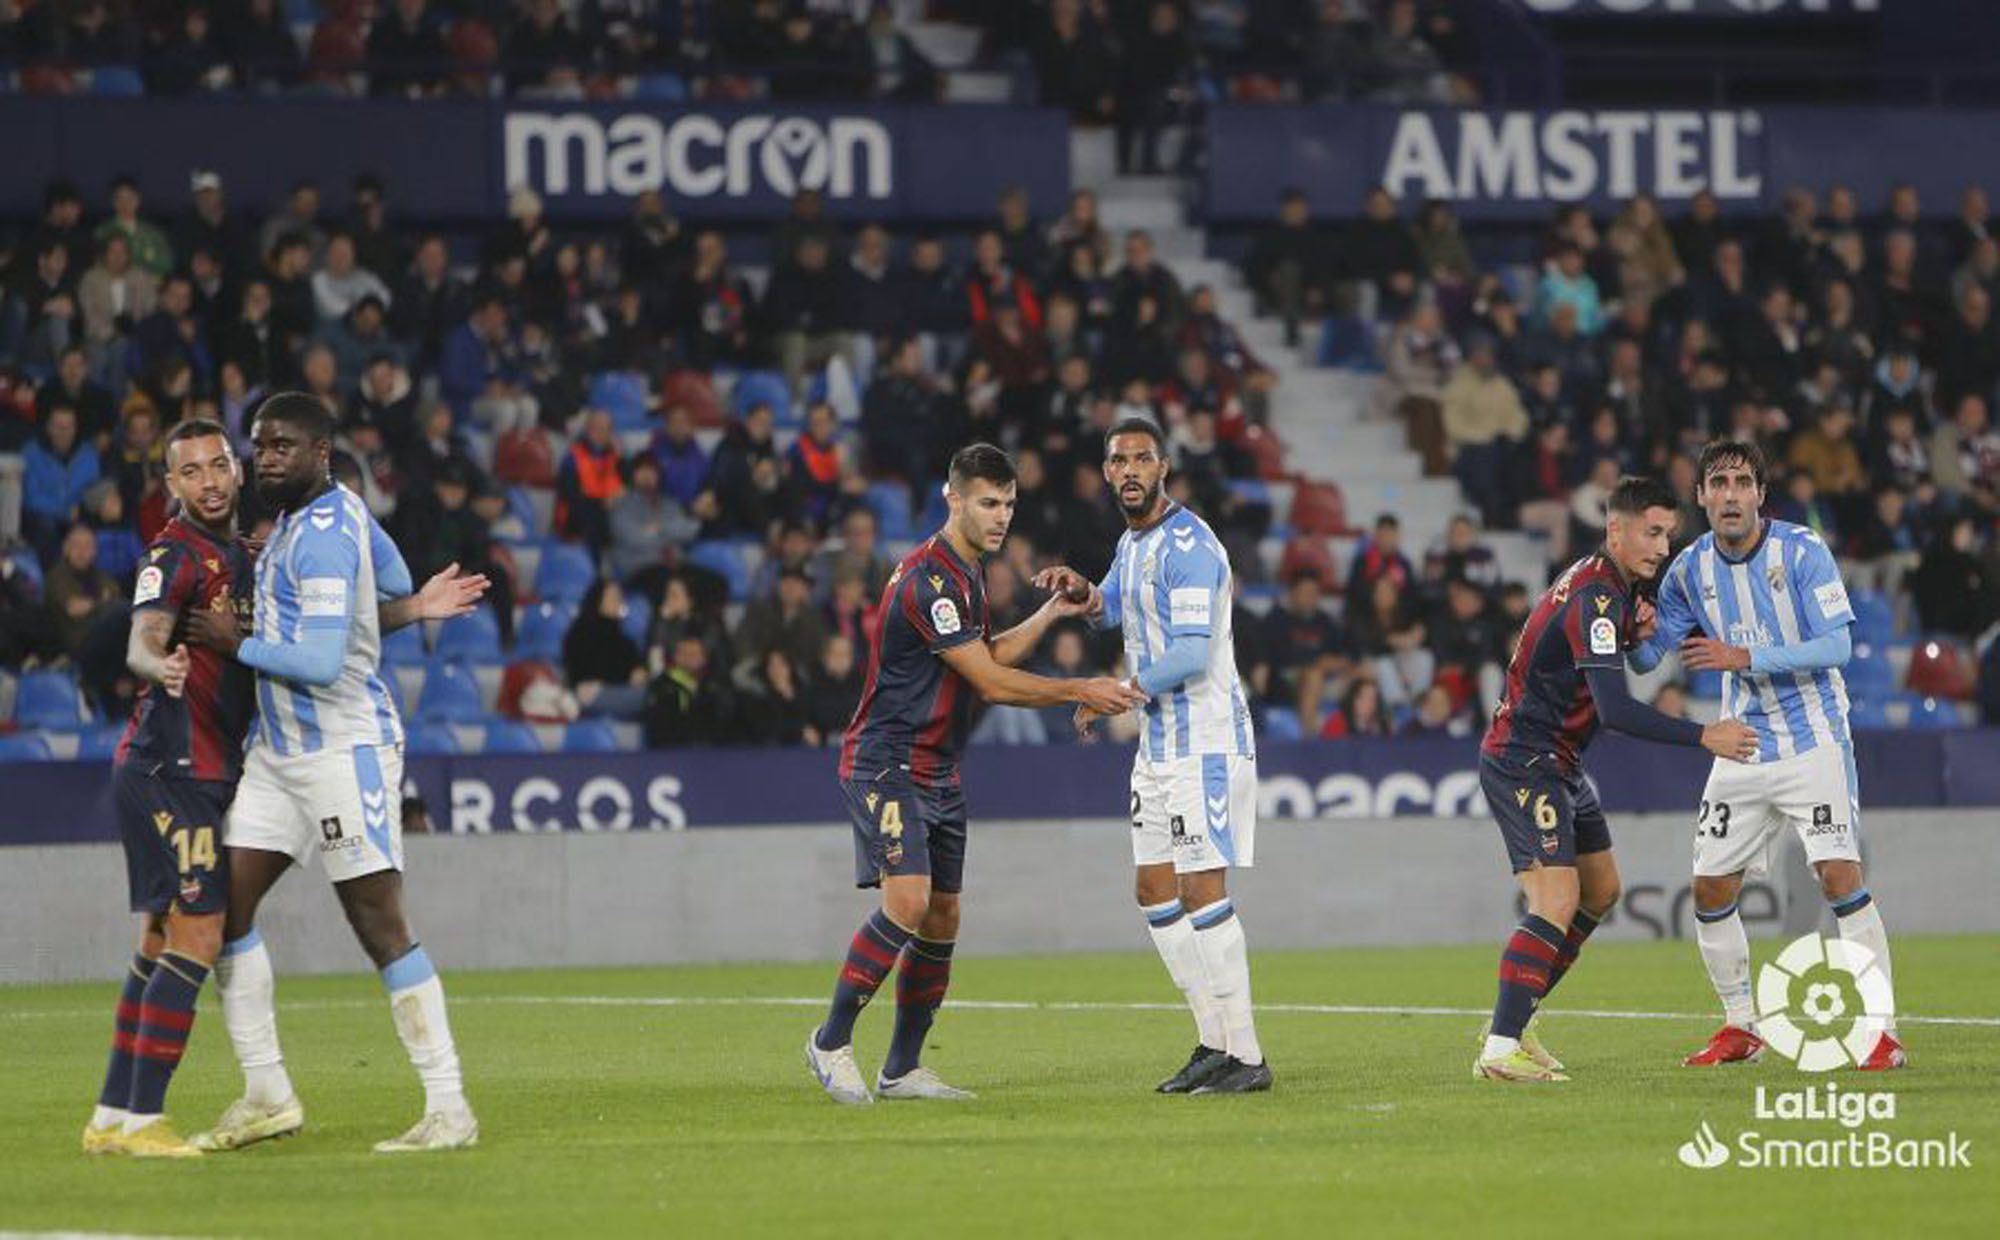 El Levante UD - Málaga CF, en imágenes